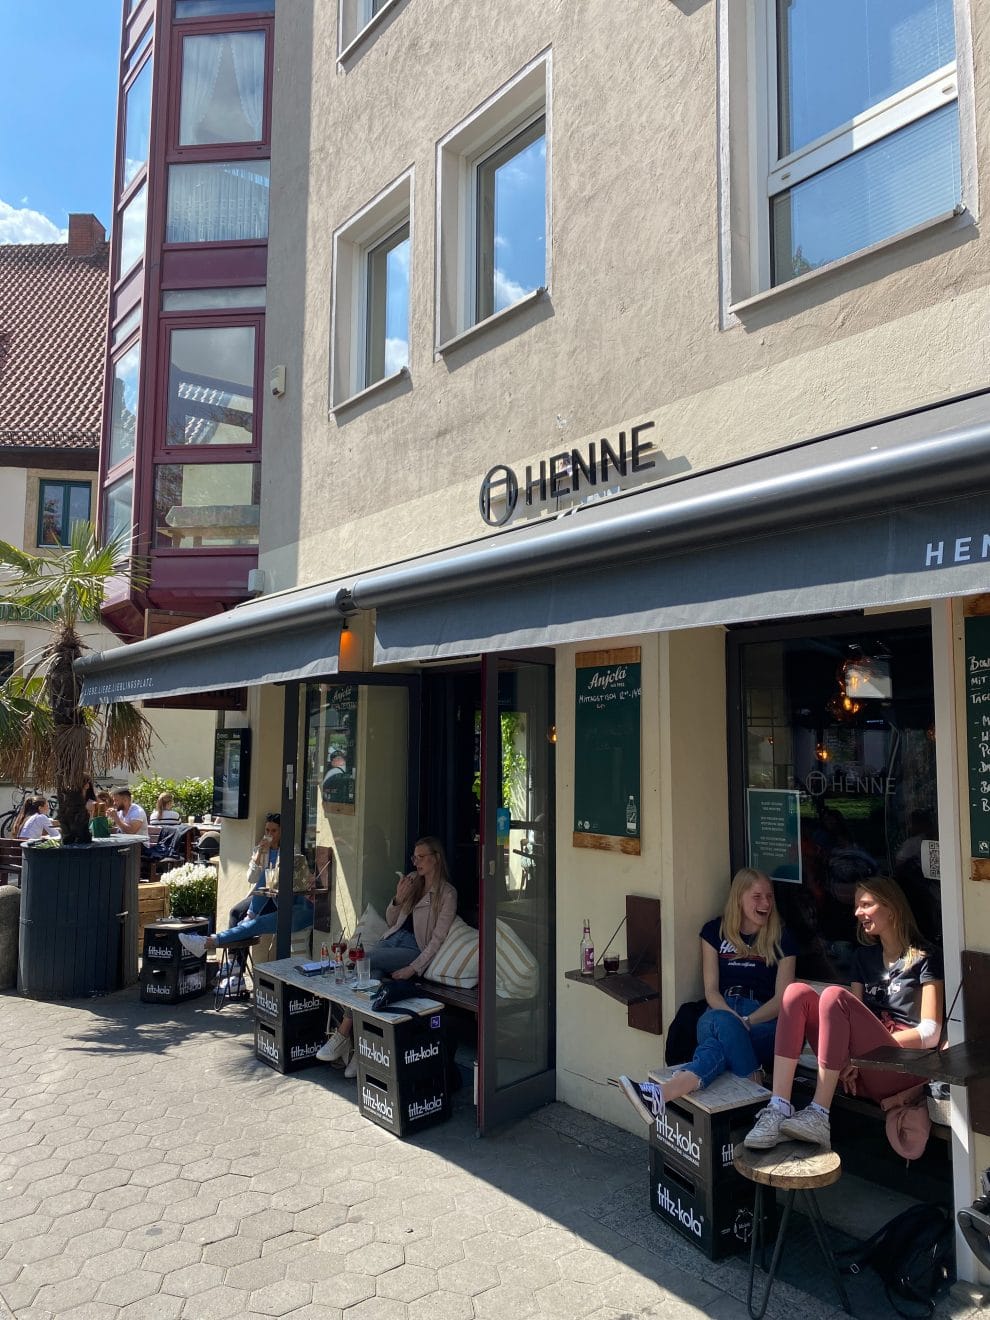 Redlingerstraße leukste wijk Osnabruck  Henne cafe